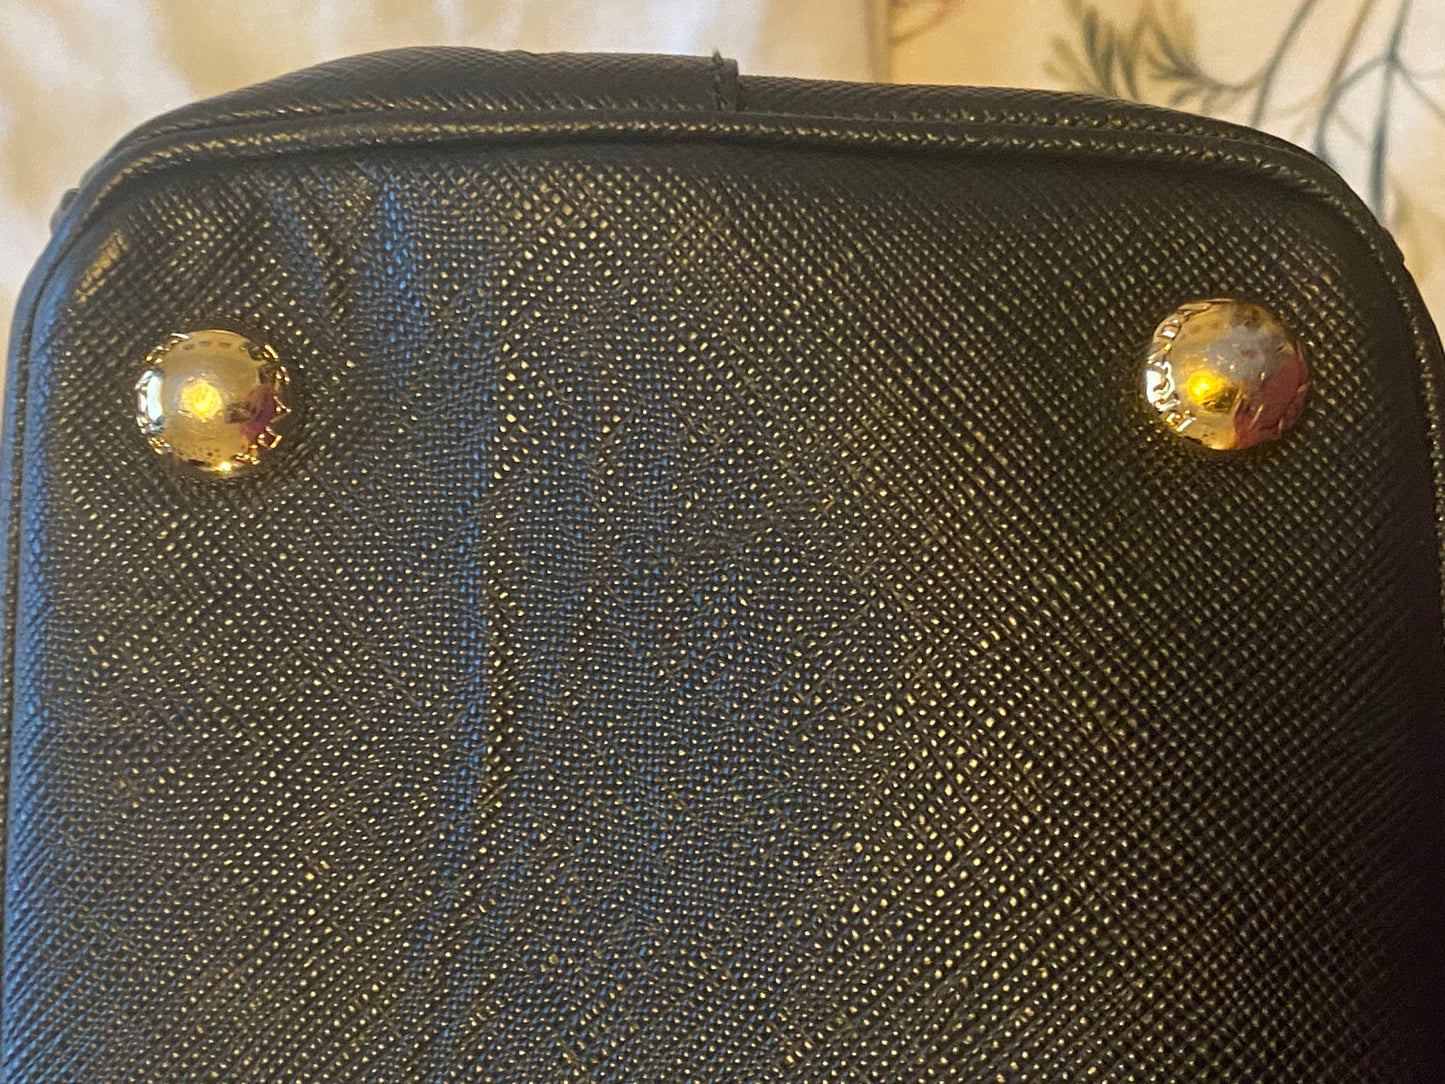 New Bag: Prada Bag